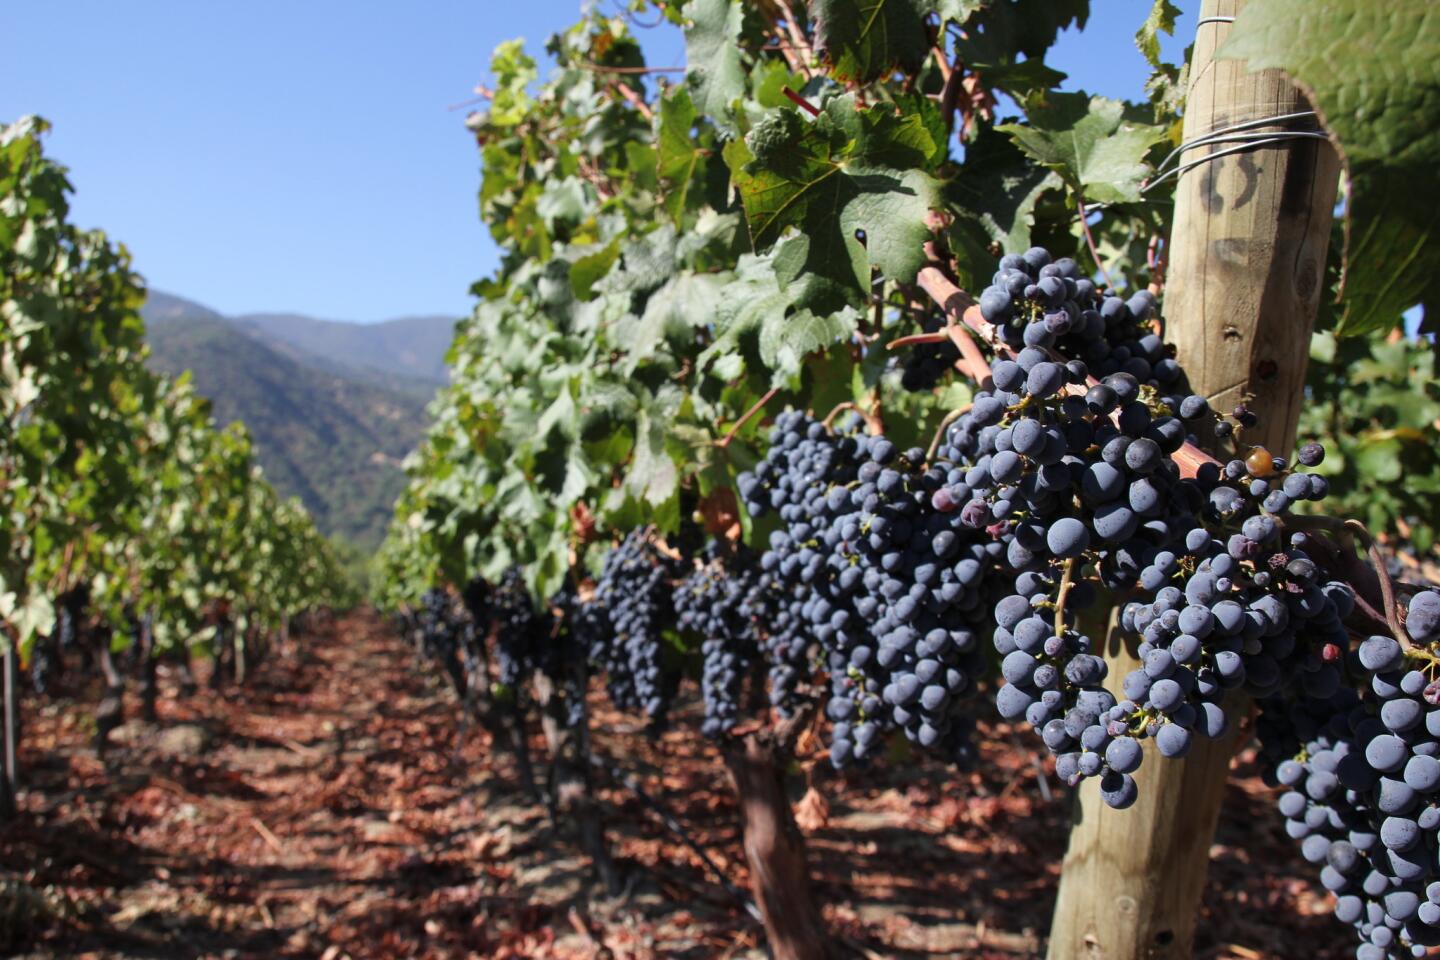 Vik acreage features Carmenere, Cabernet Franc, Cabernet Sauvignon, Merlot and Syrah grapes.